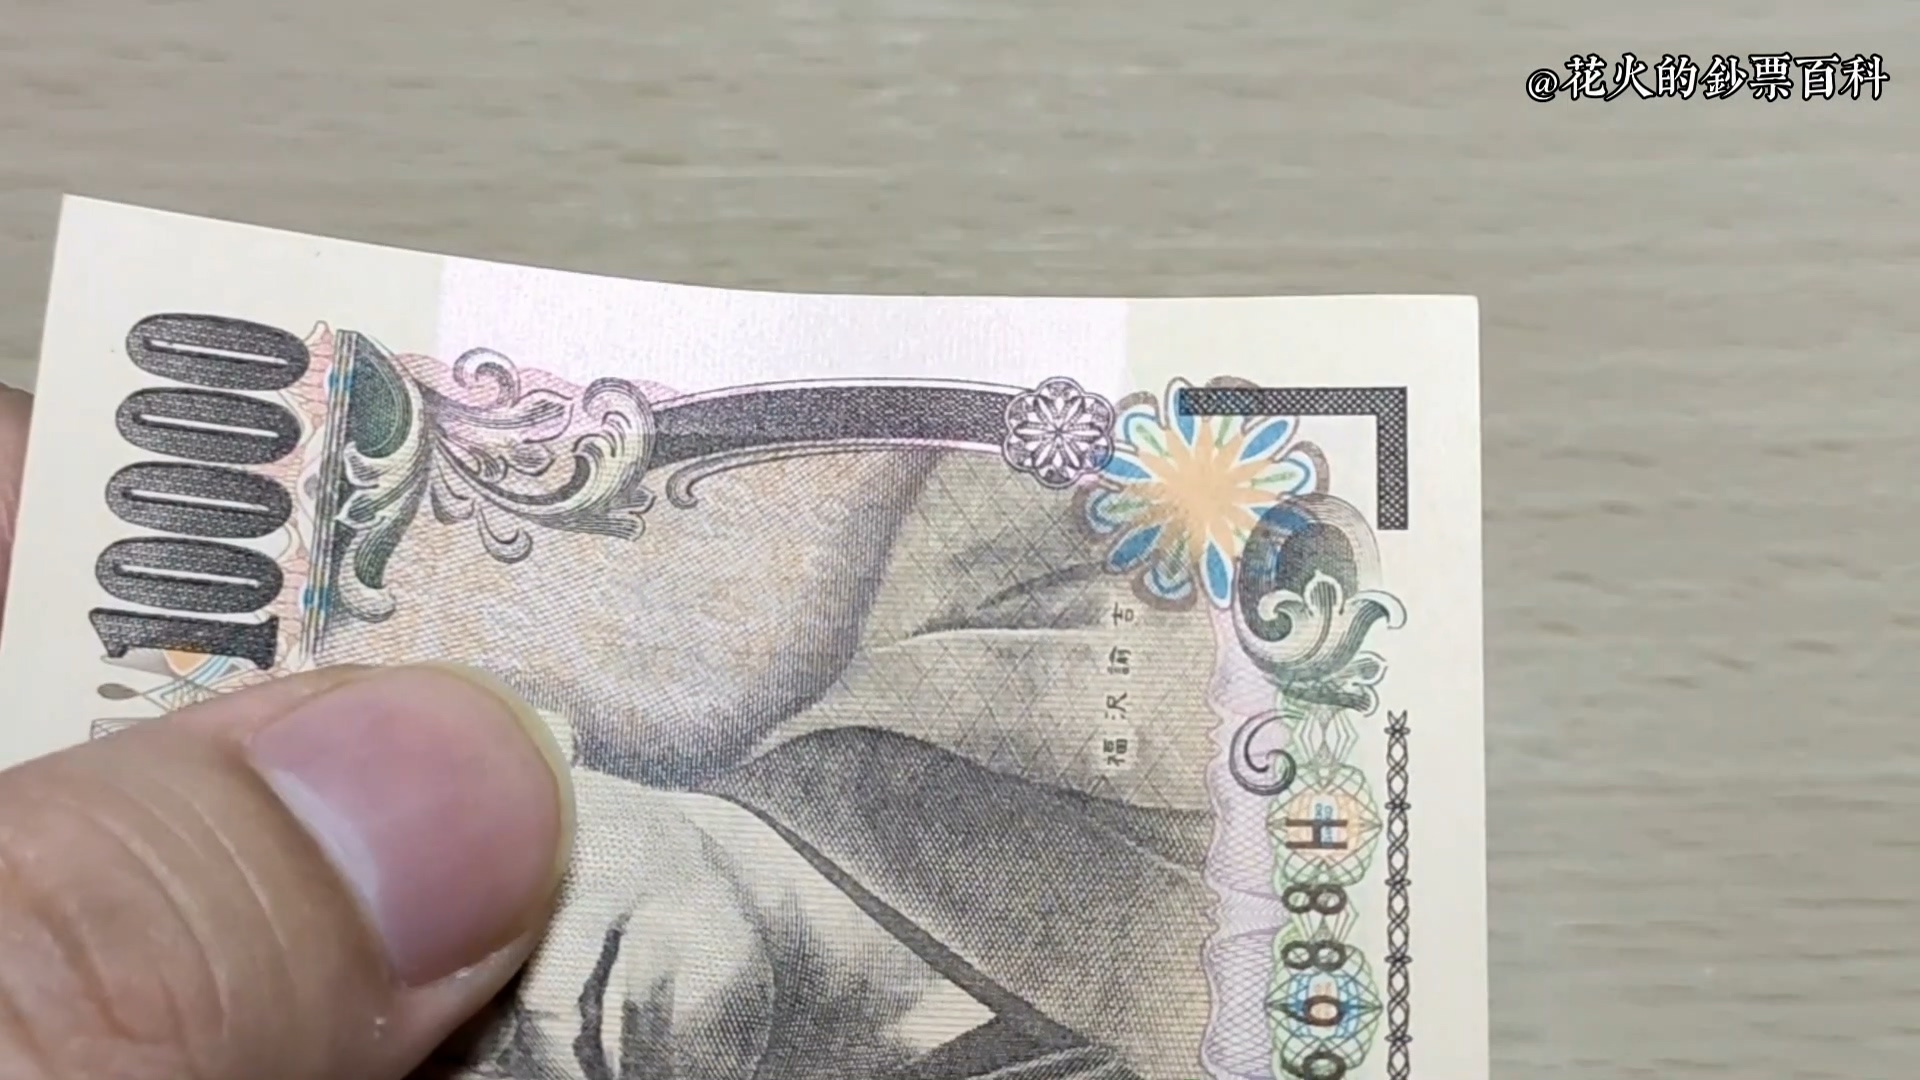 重叠的壹万日元纸币的照片素材免抠元素模板下载 - 图巨人